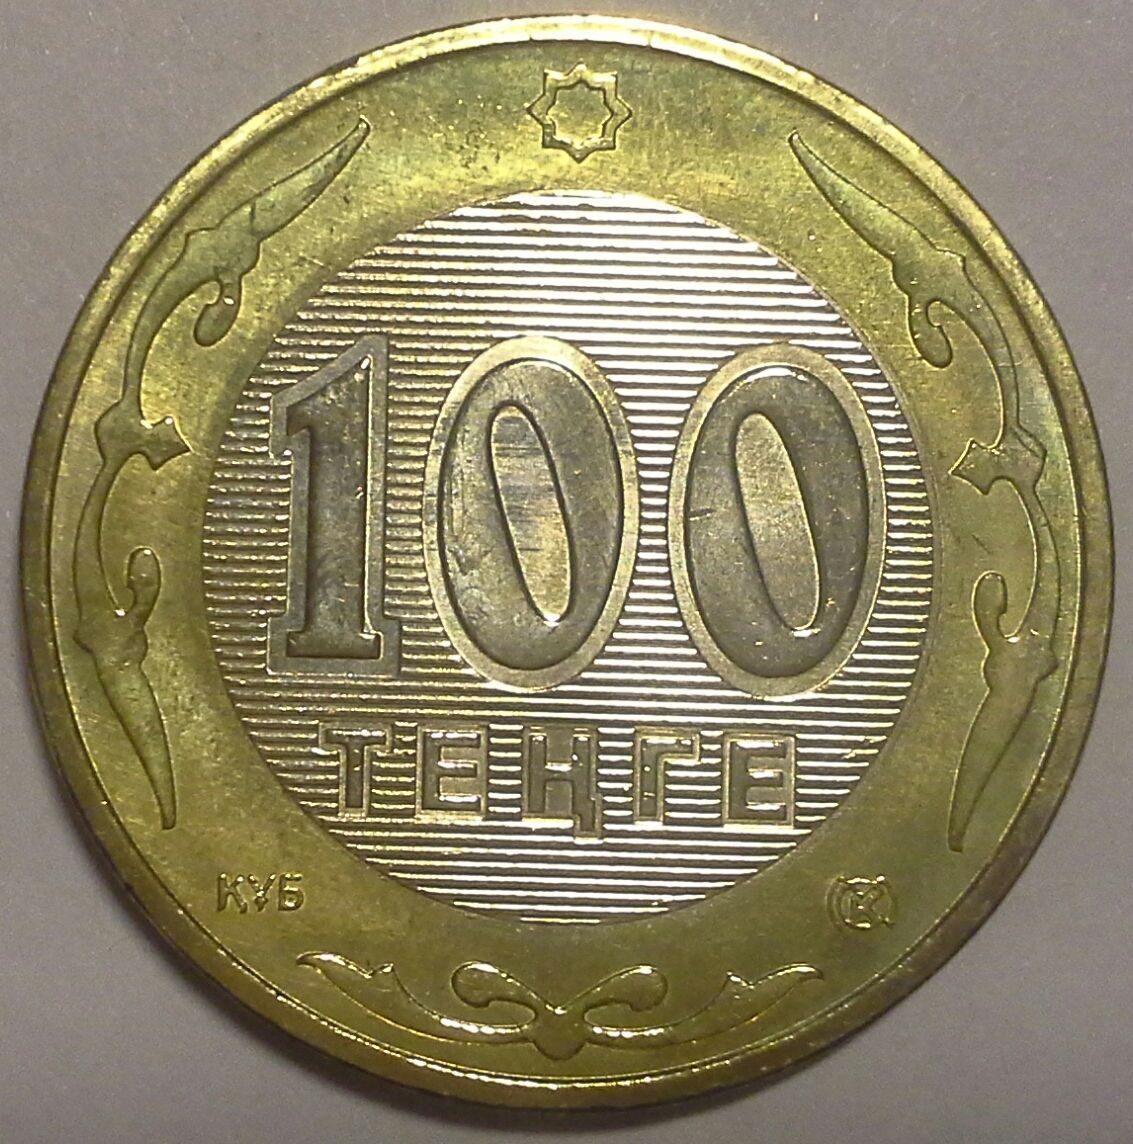 100 Тенге Казахстан